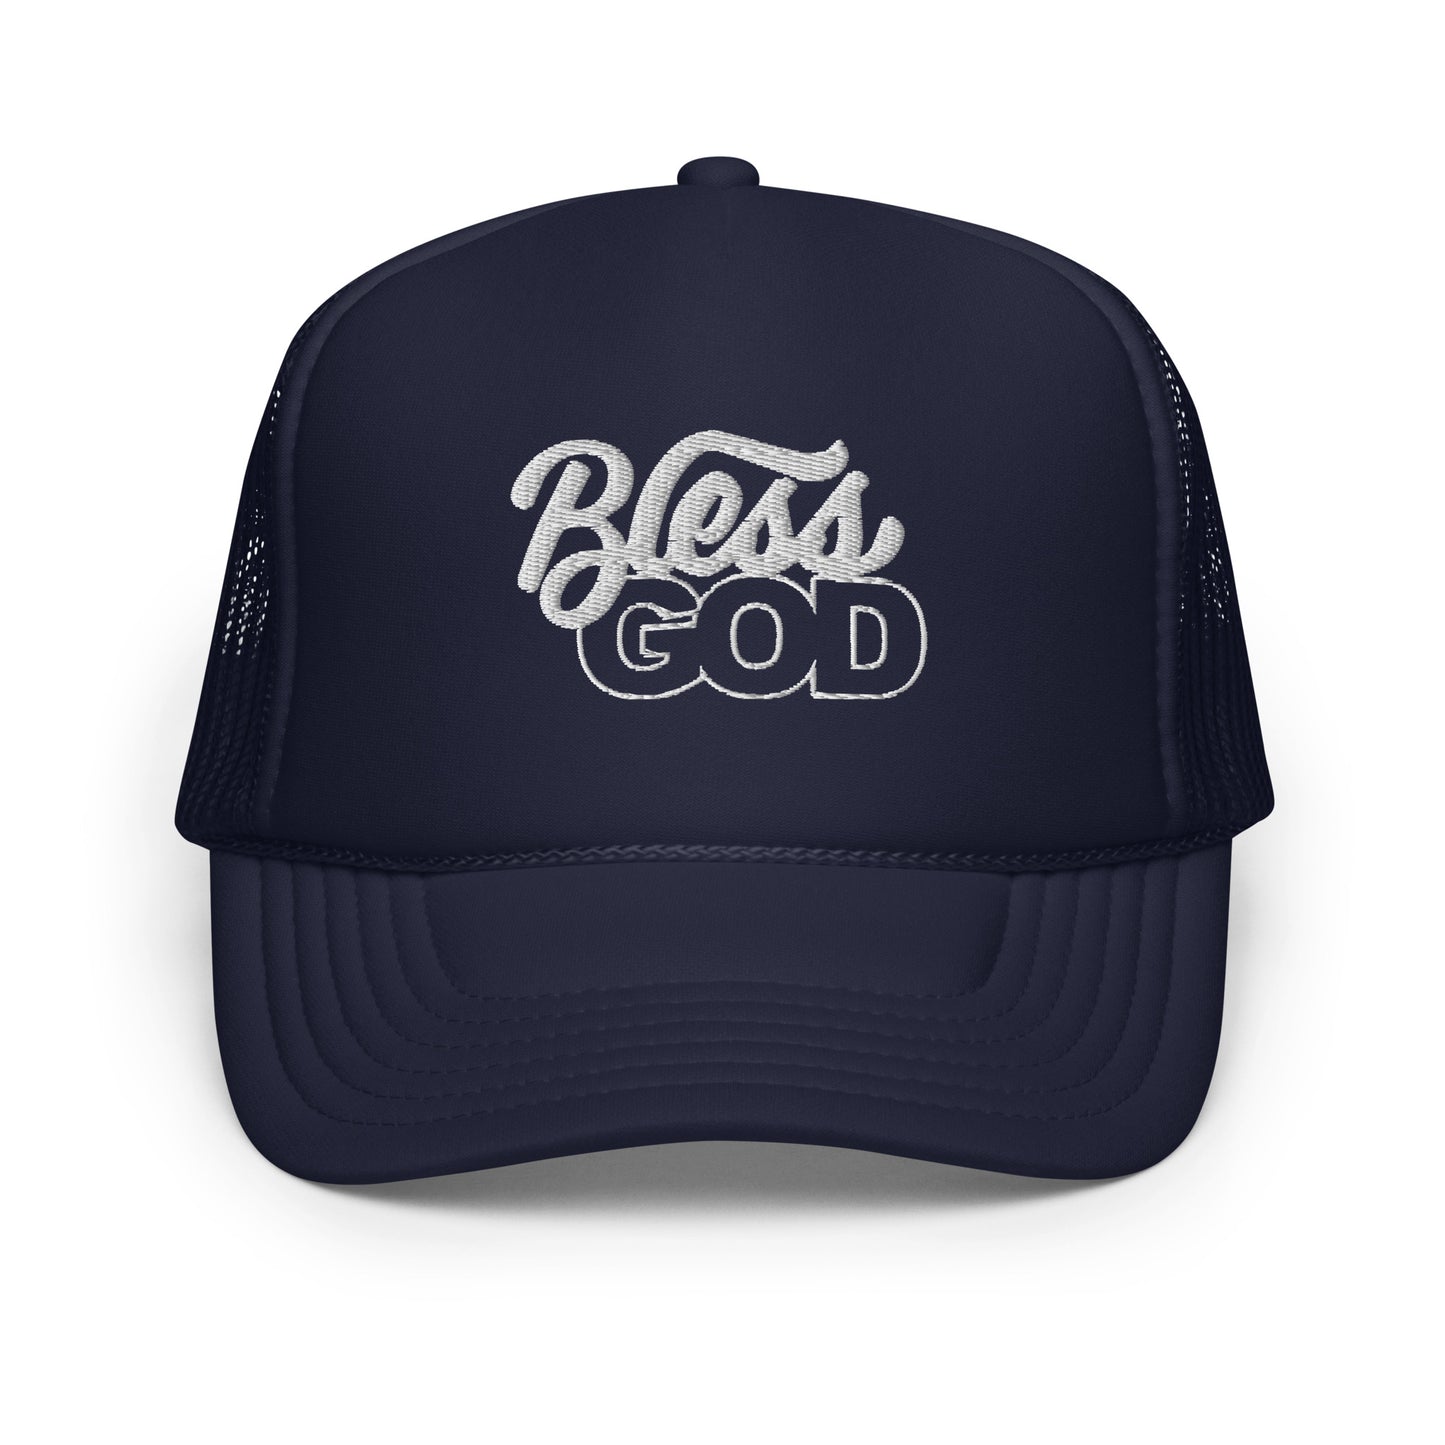 Bless God Trucker Hat